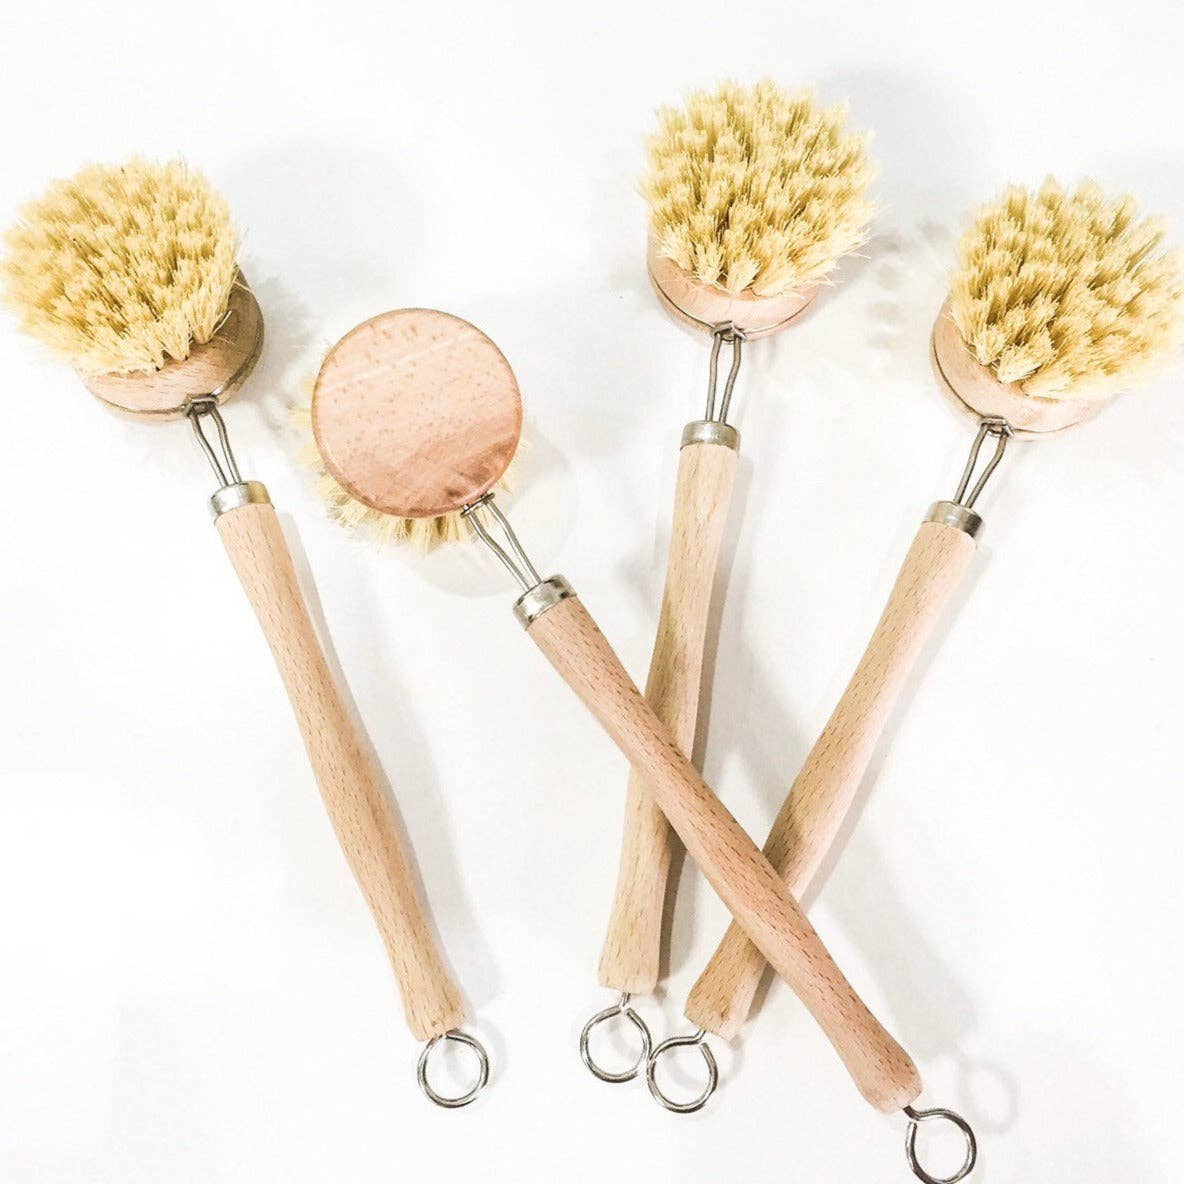 Smile Boutiques - Bamboo Sisal Dish Brush - Zero Waste Kitchen Brush